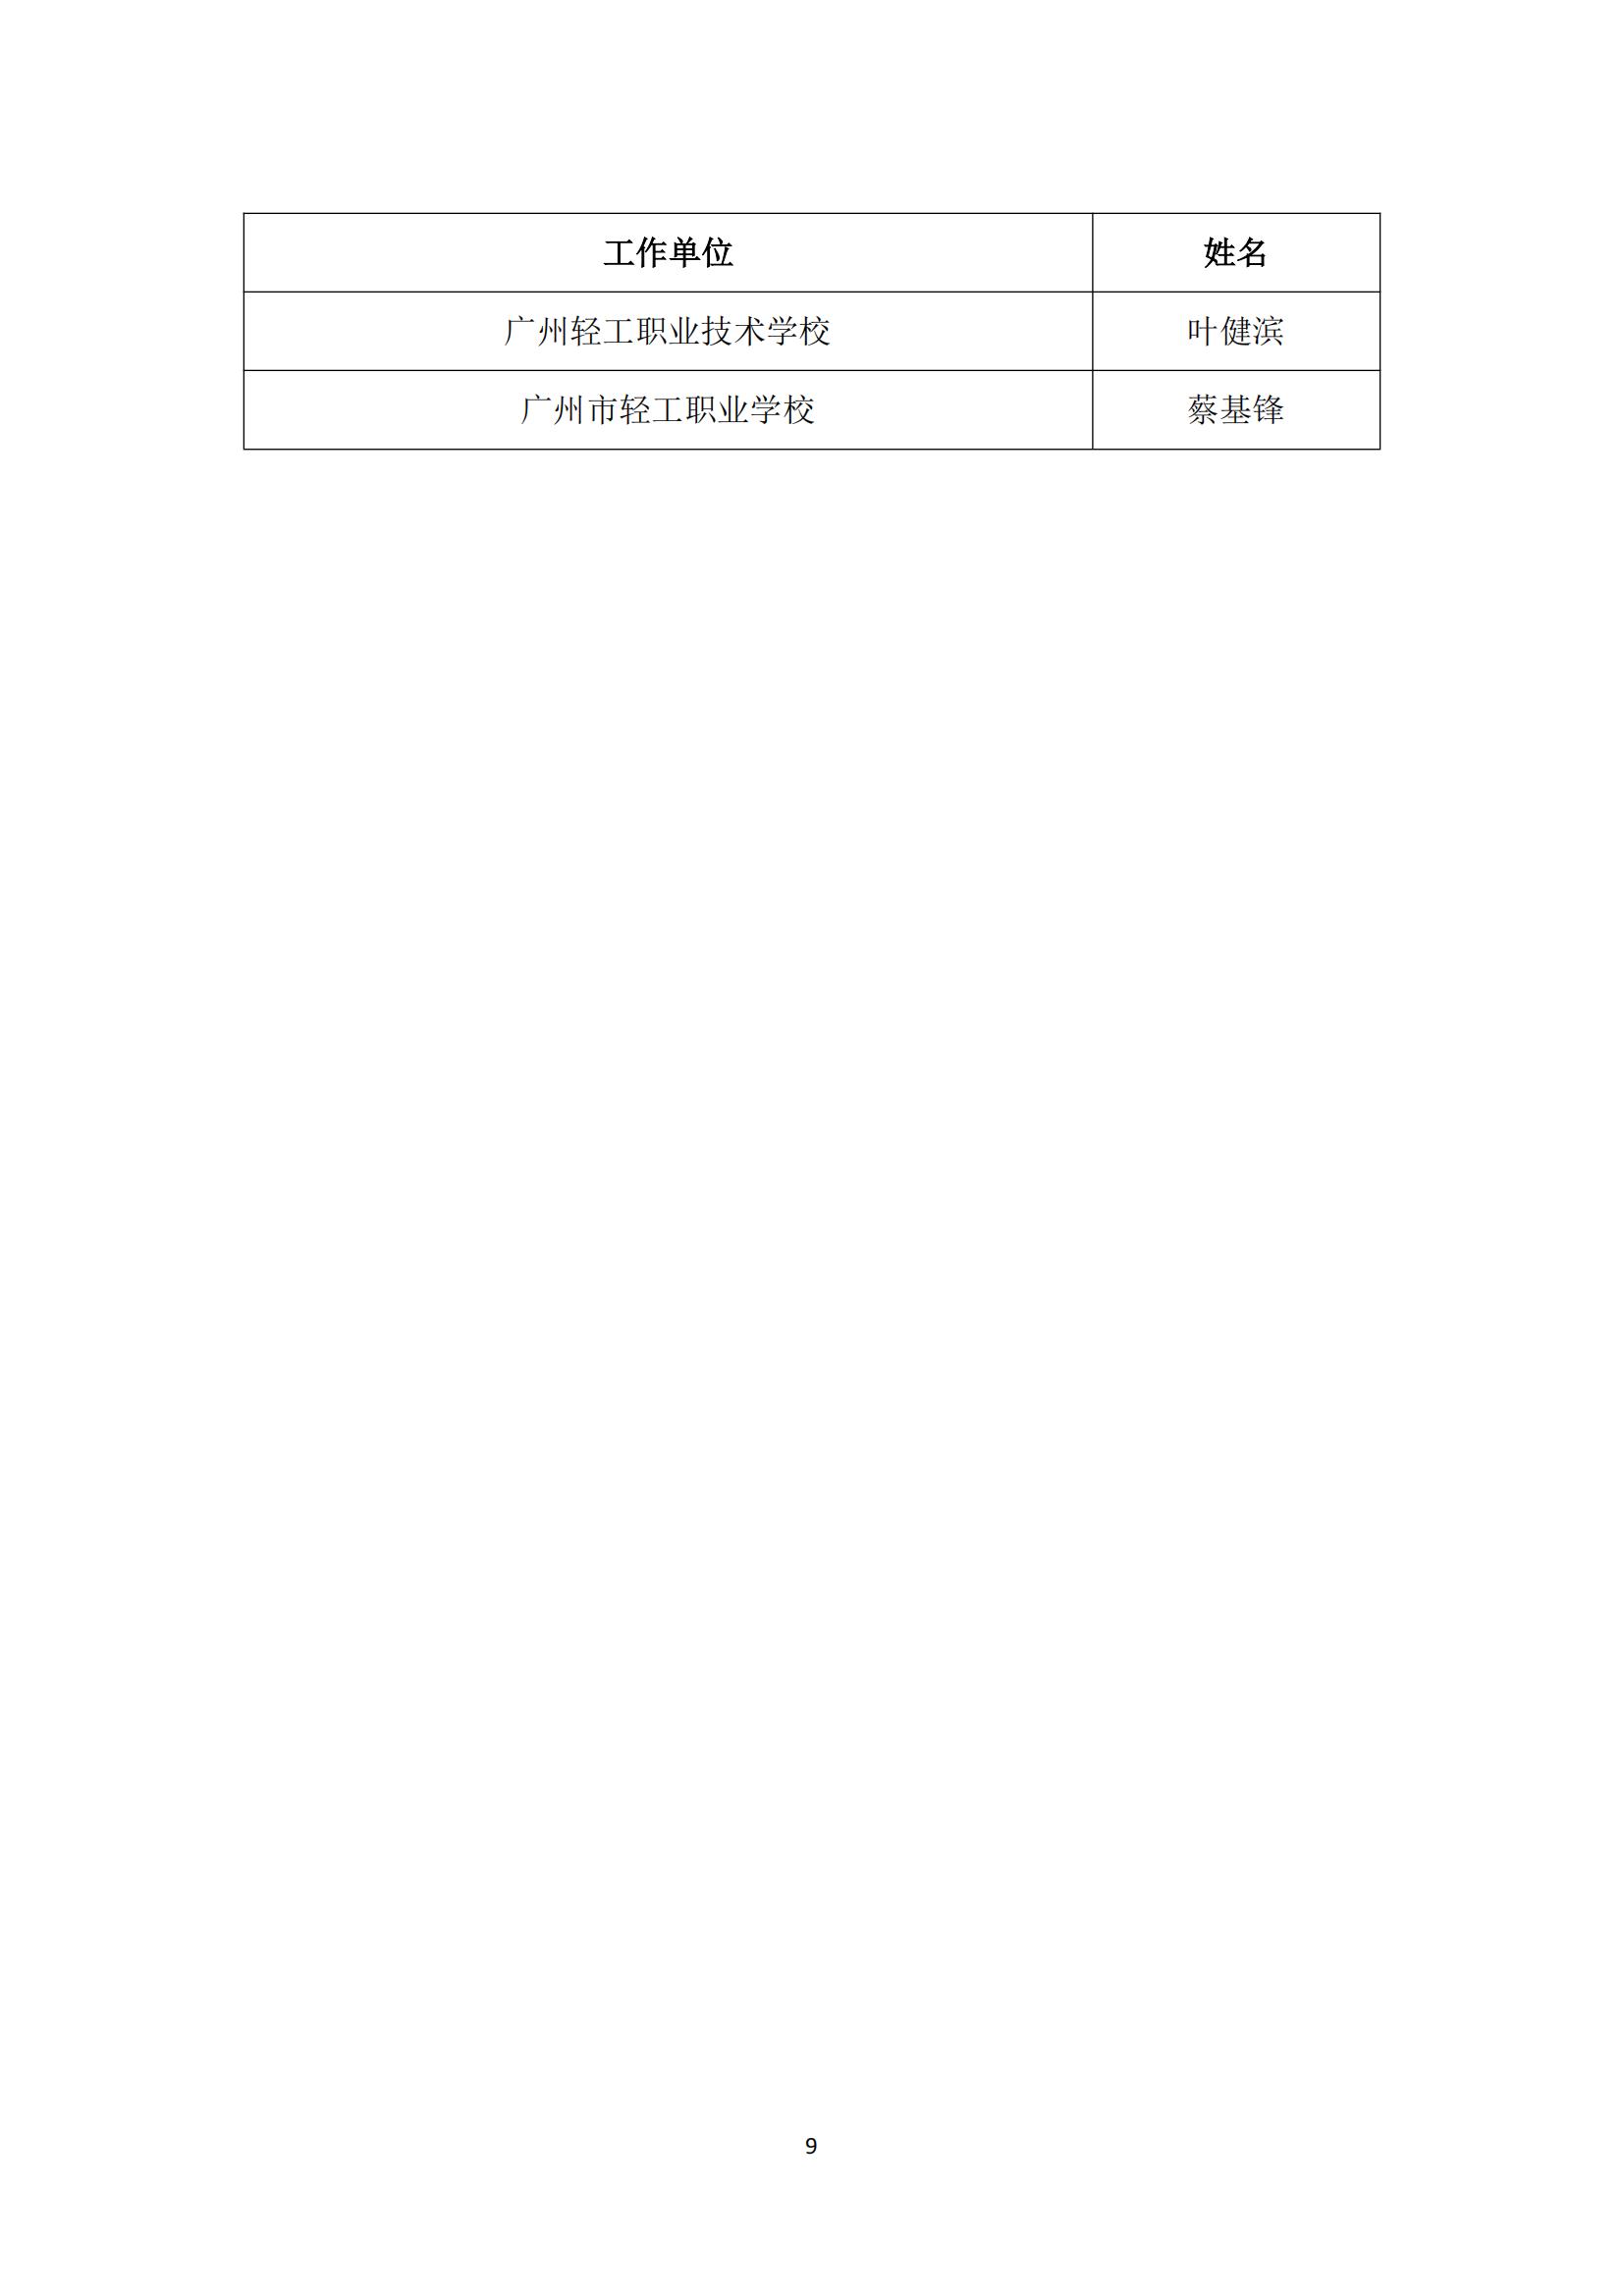 2017 年中国技能大赛——广东省可编程序控制系统设计师（机电一体化）职业技能竞赛_08.jpg